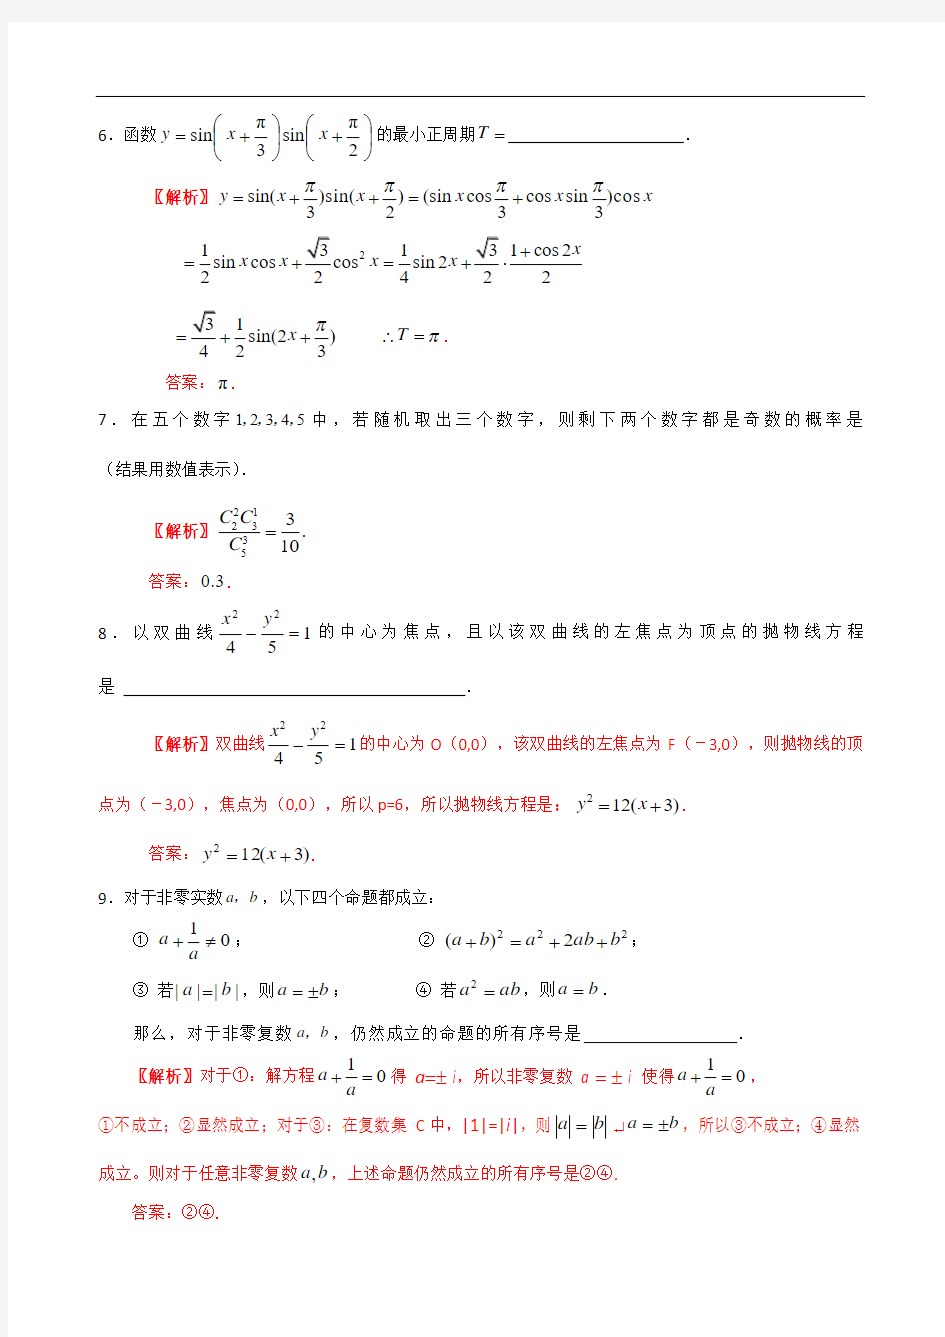 2007年高考试题——数学理(上海卷)